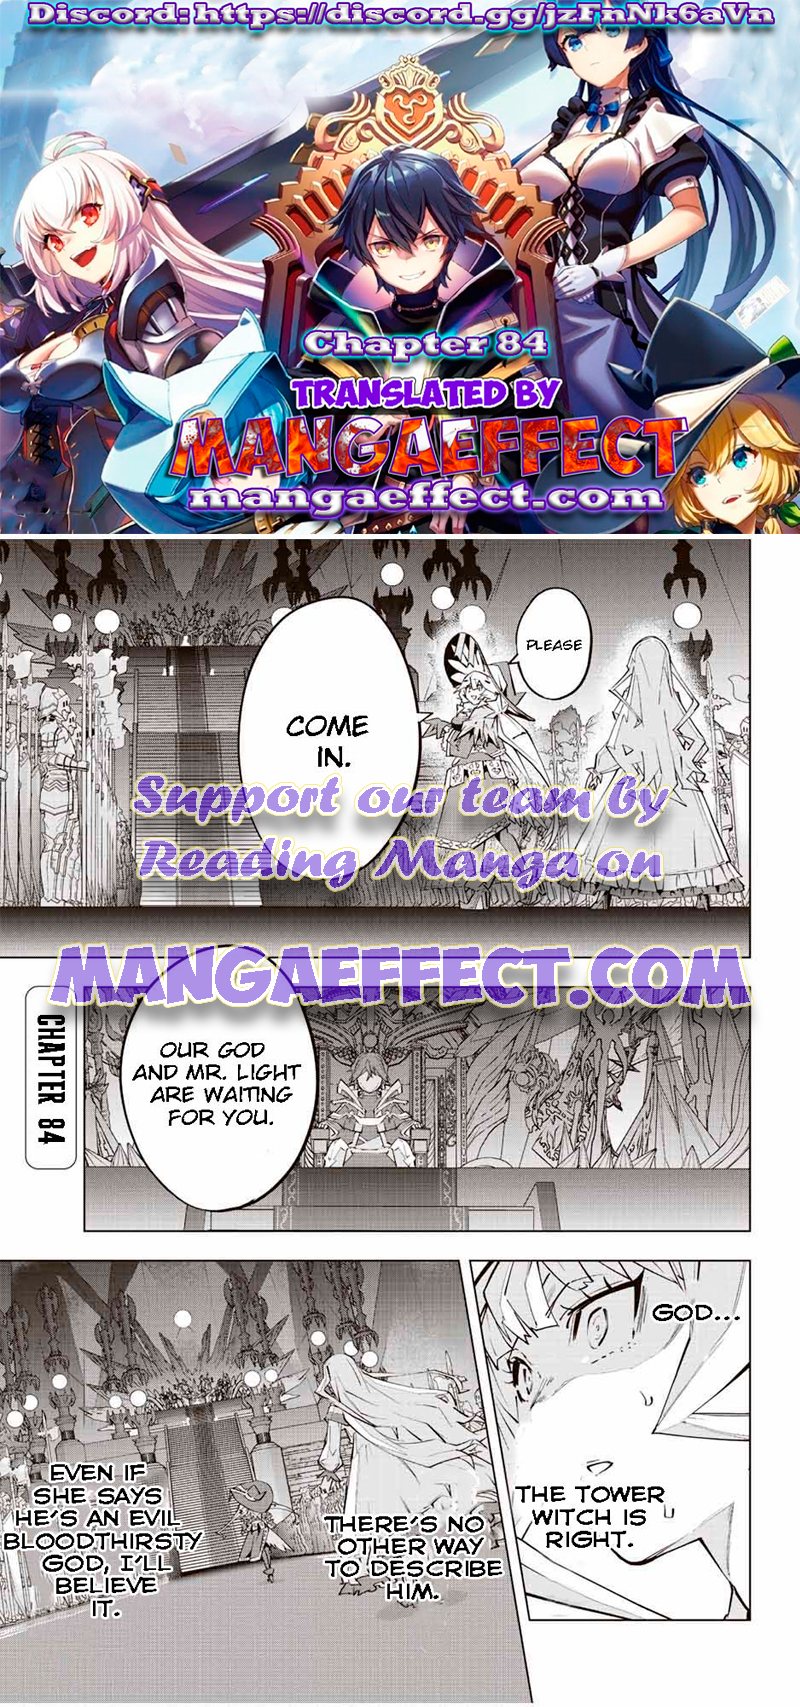 Read Manga My Gift LVL 9999 Unlimited Gacha - Chapter 1